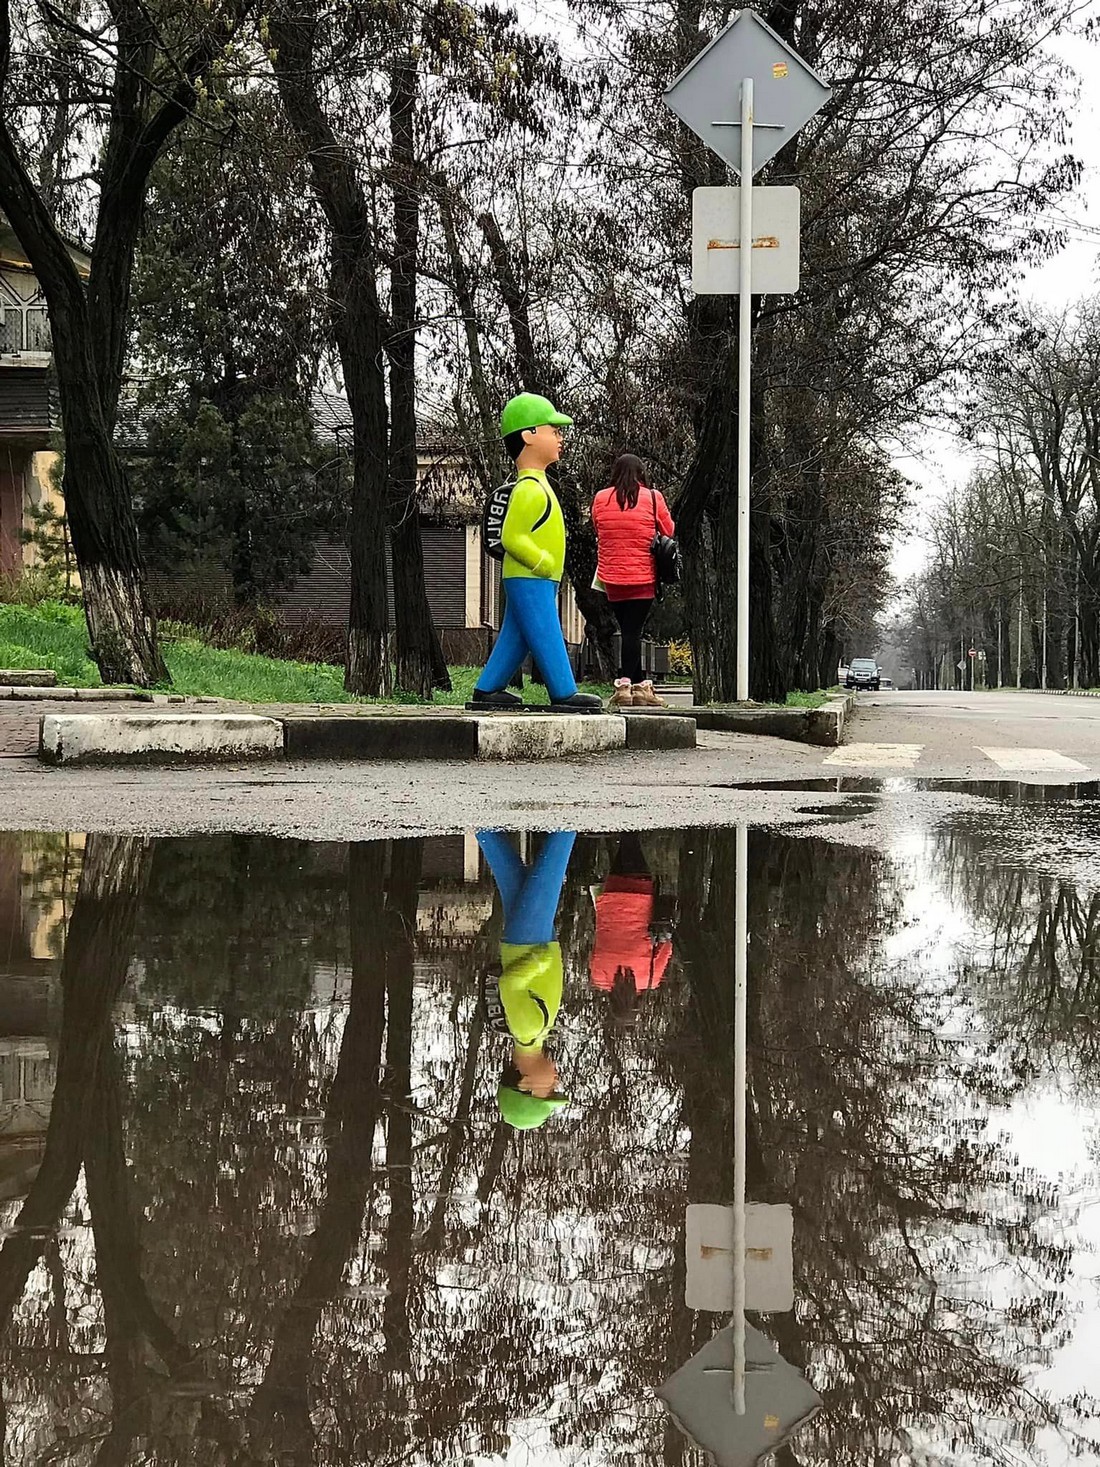 Як виглядає Нікополь після дощу 12 квітня, показав місцевий фотограф (фото)